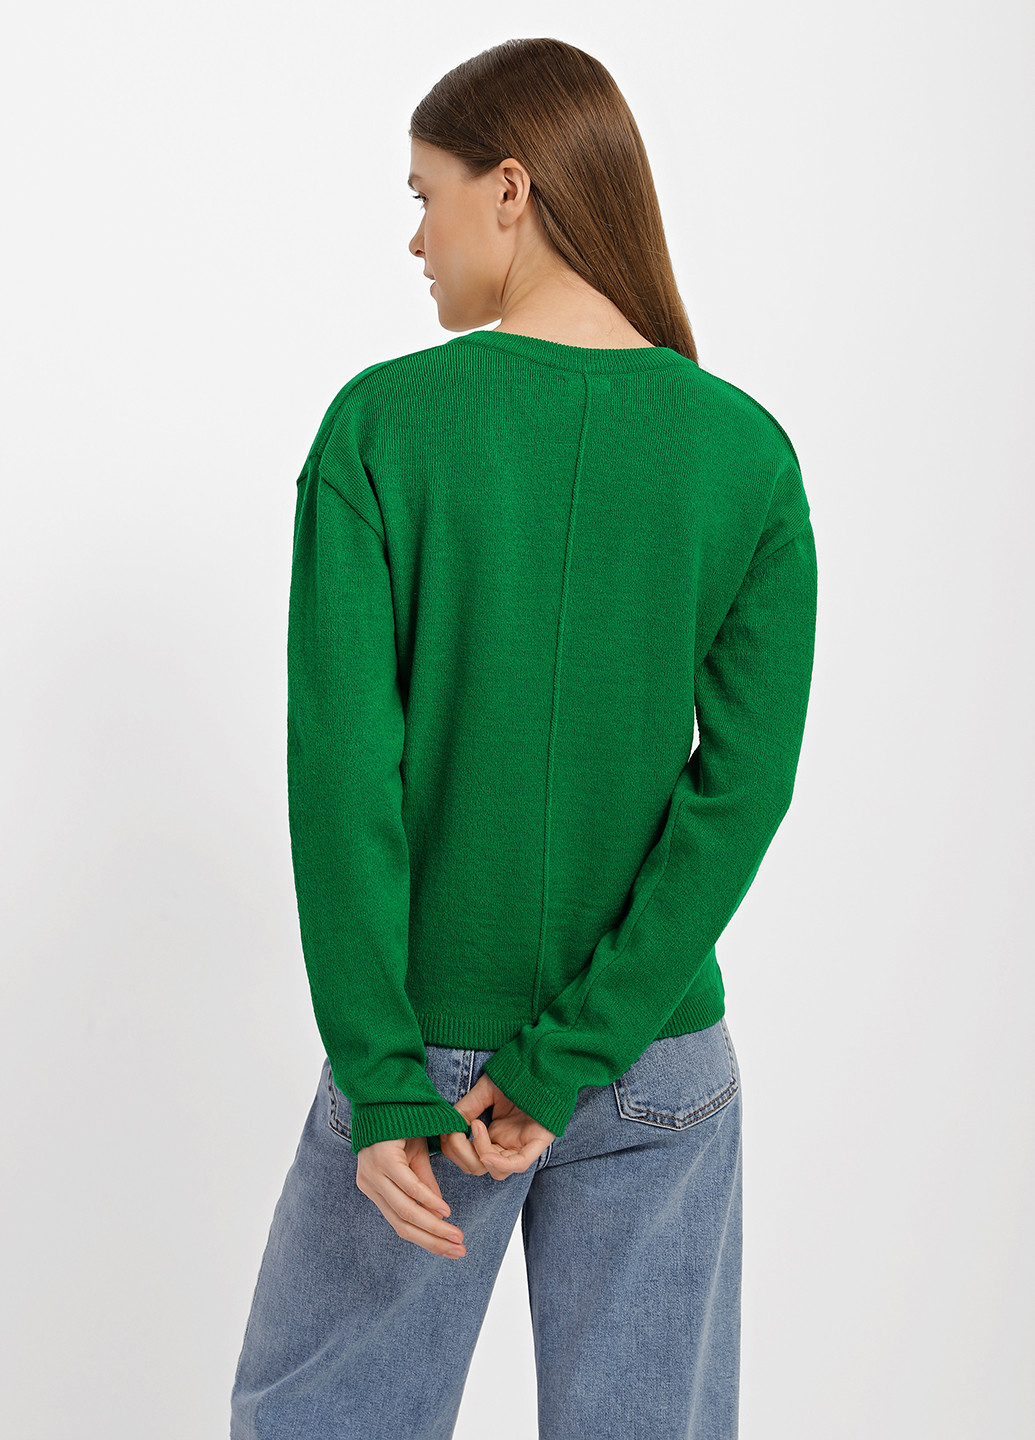 Зеленый демисезонный пуловер пуловер Sewel